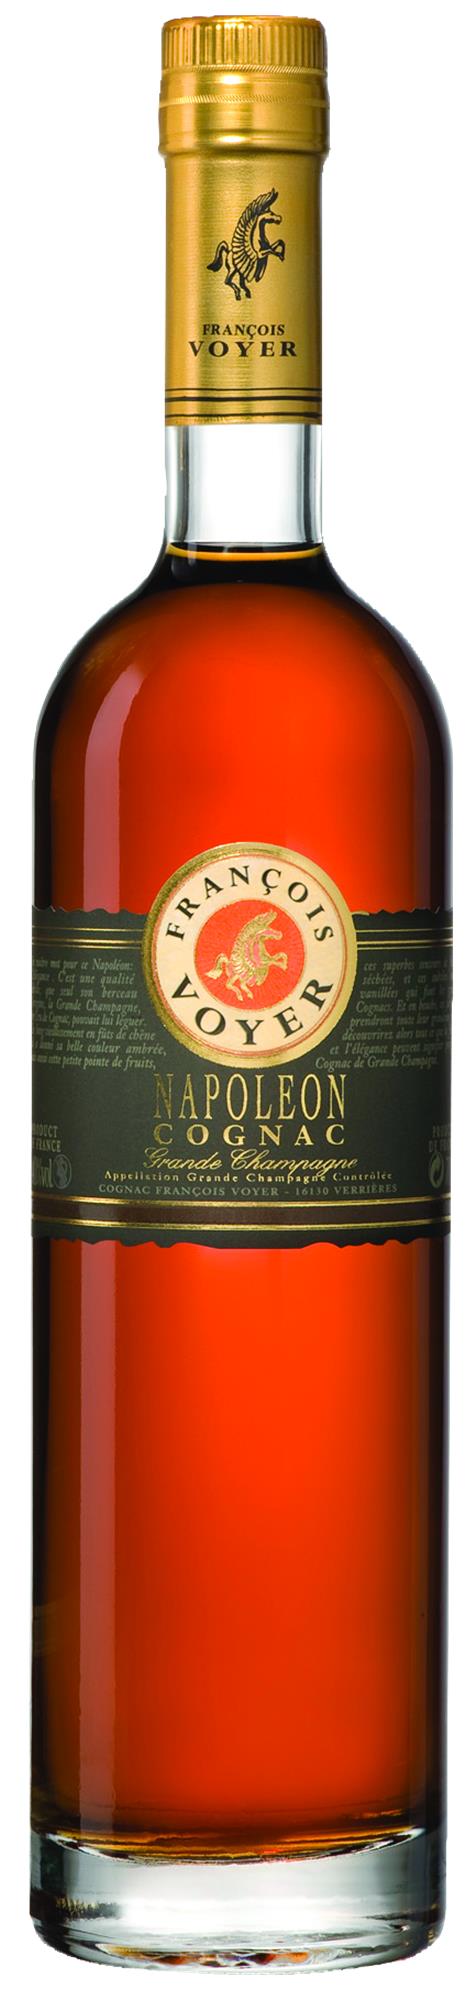 François Voyer Napolean Grande Champagne Cognac